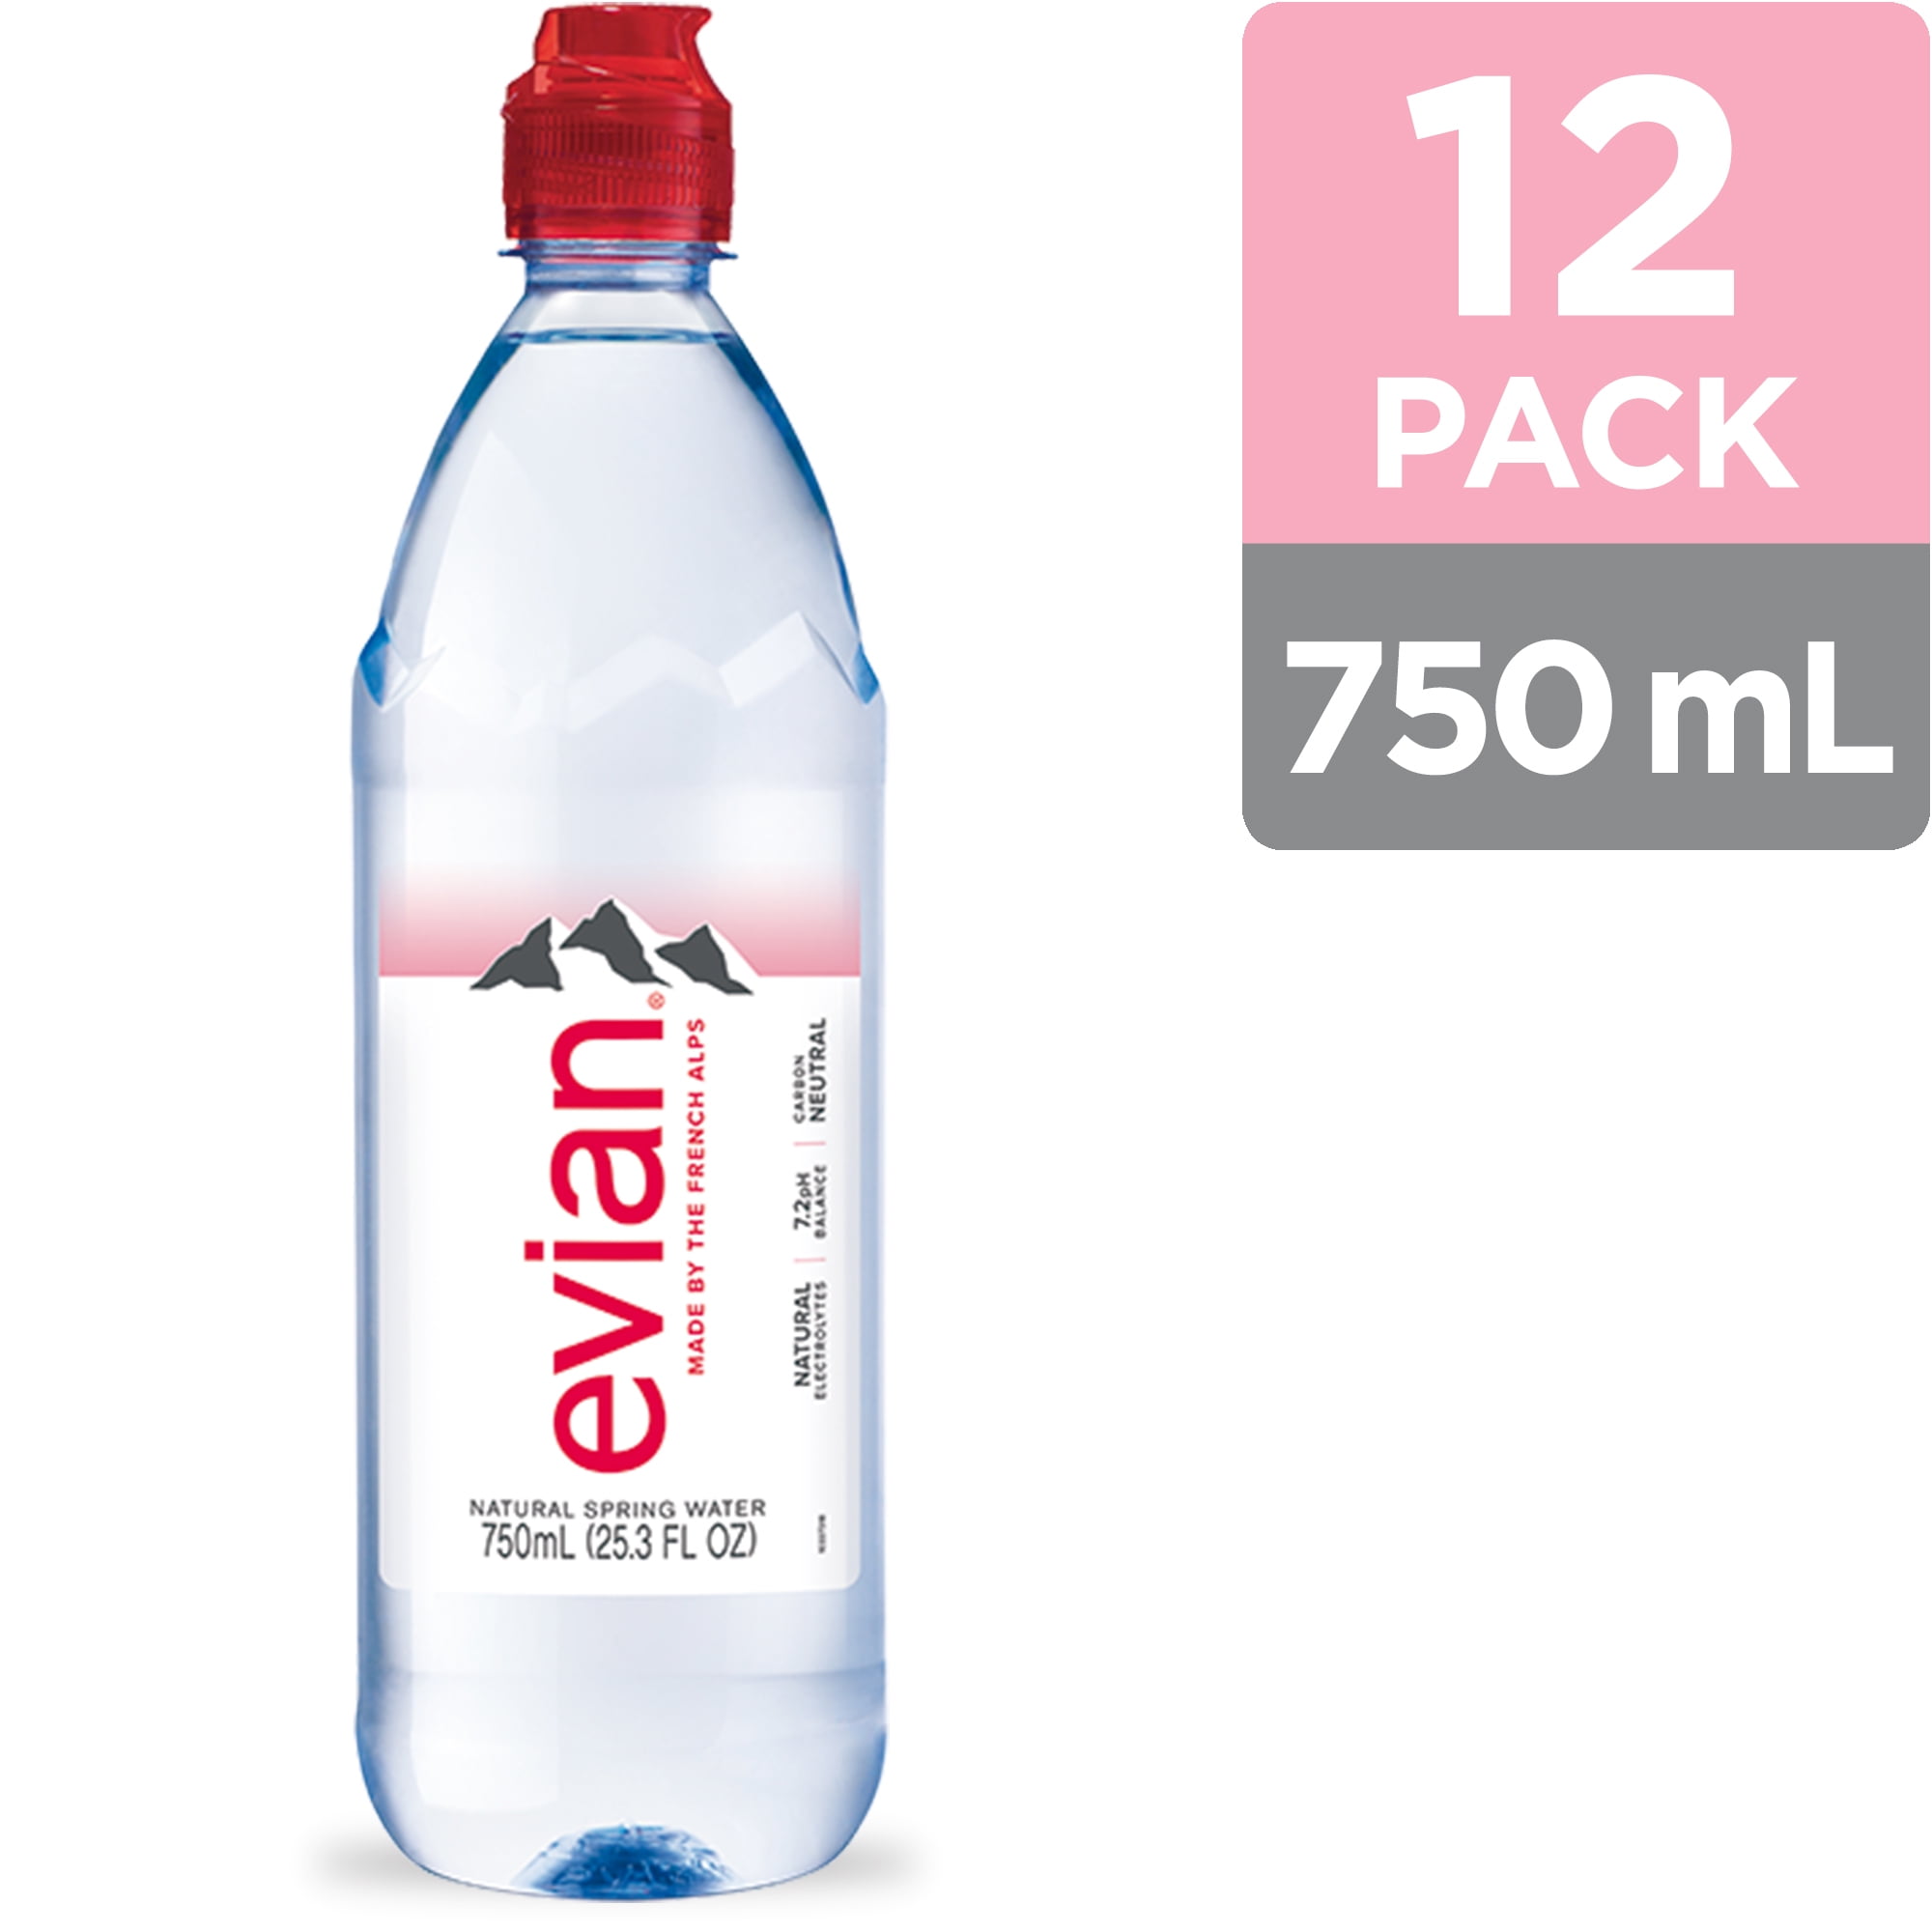 Evian Natural Spring Water Bottles Naturally Filtered Spring Water 750 Ml 25 36 Fl Oz Bottle 12 Count Walmart Com Walmart Com,Greek Olive Oil Tin